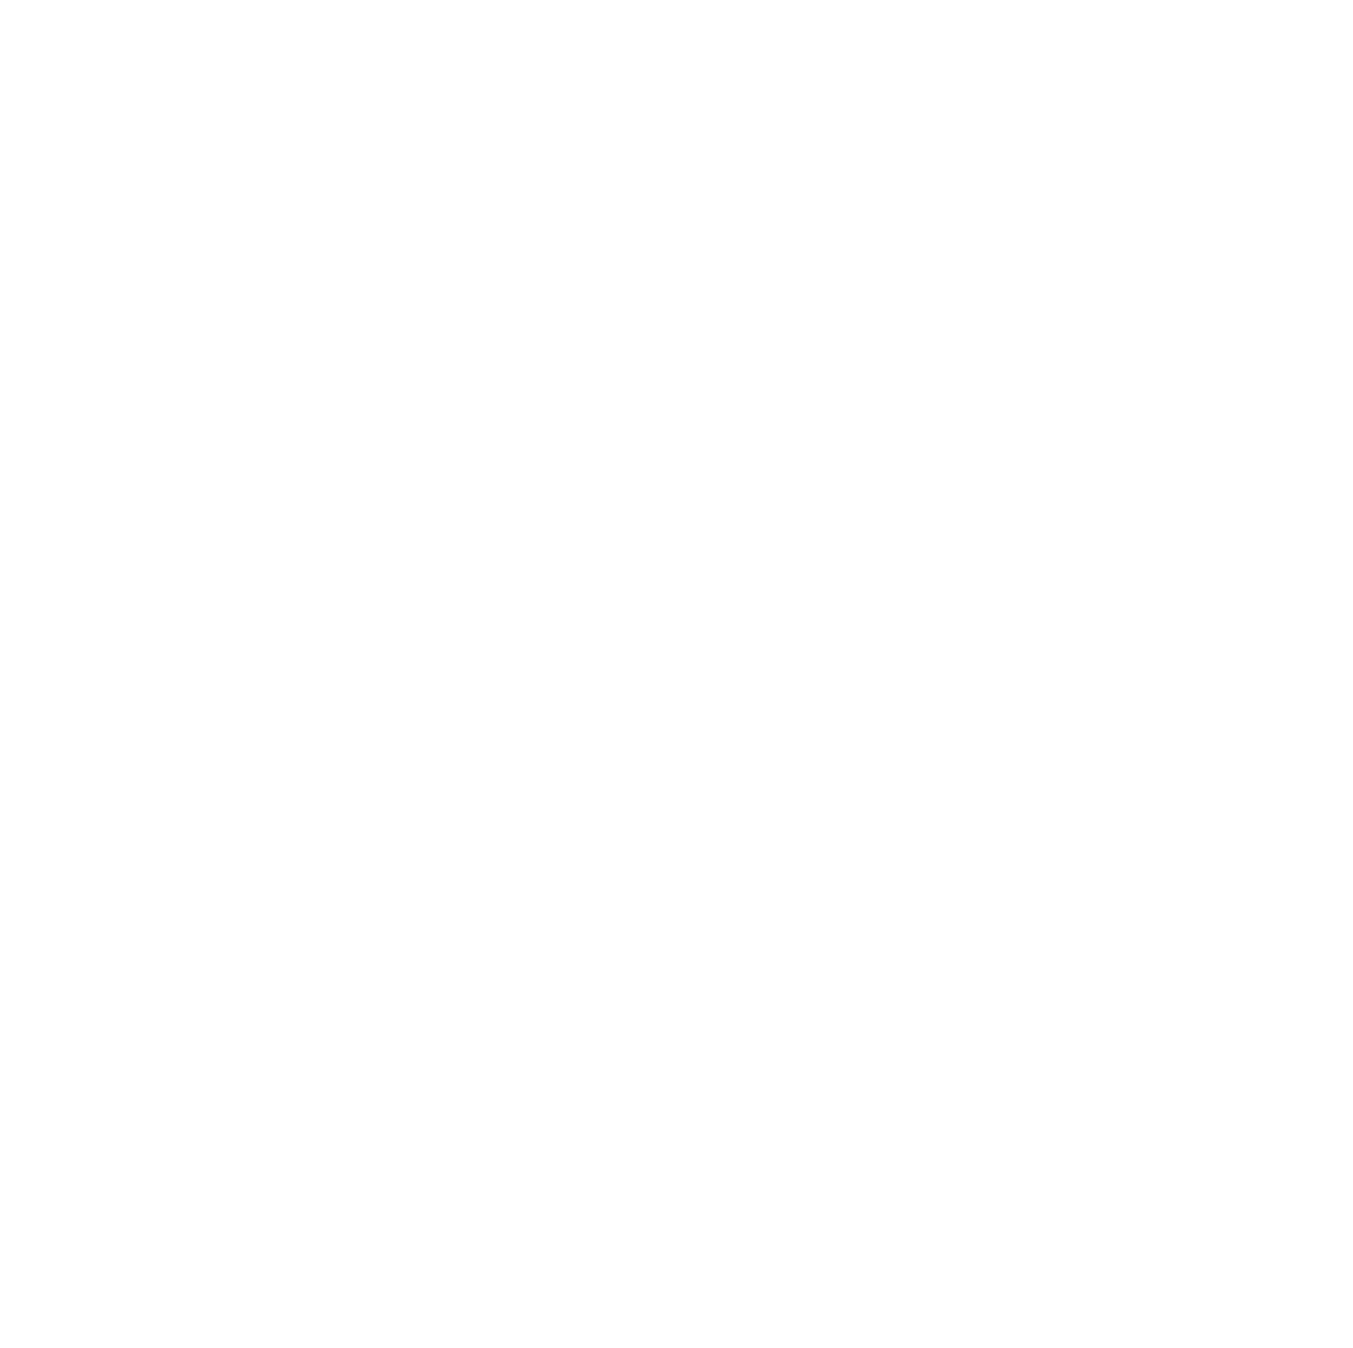 Society420 - Premium Cannabis Culture